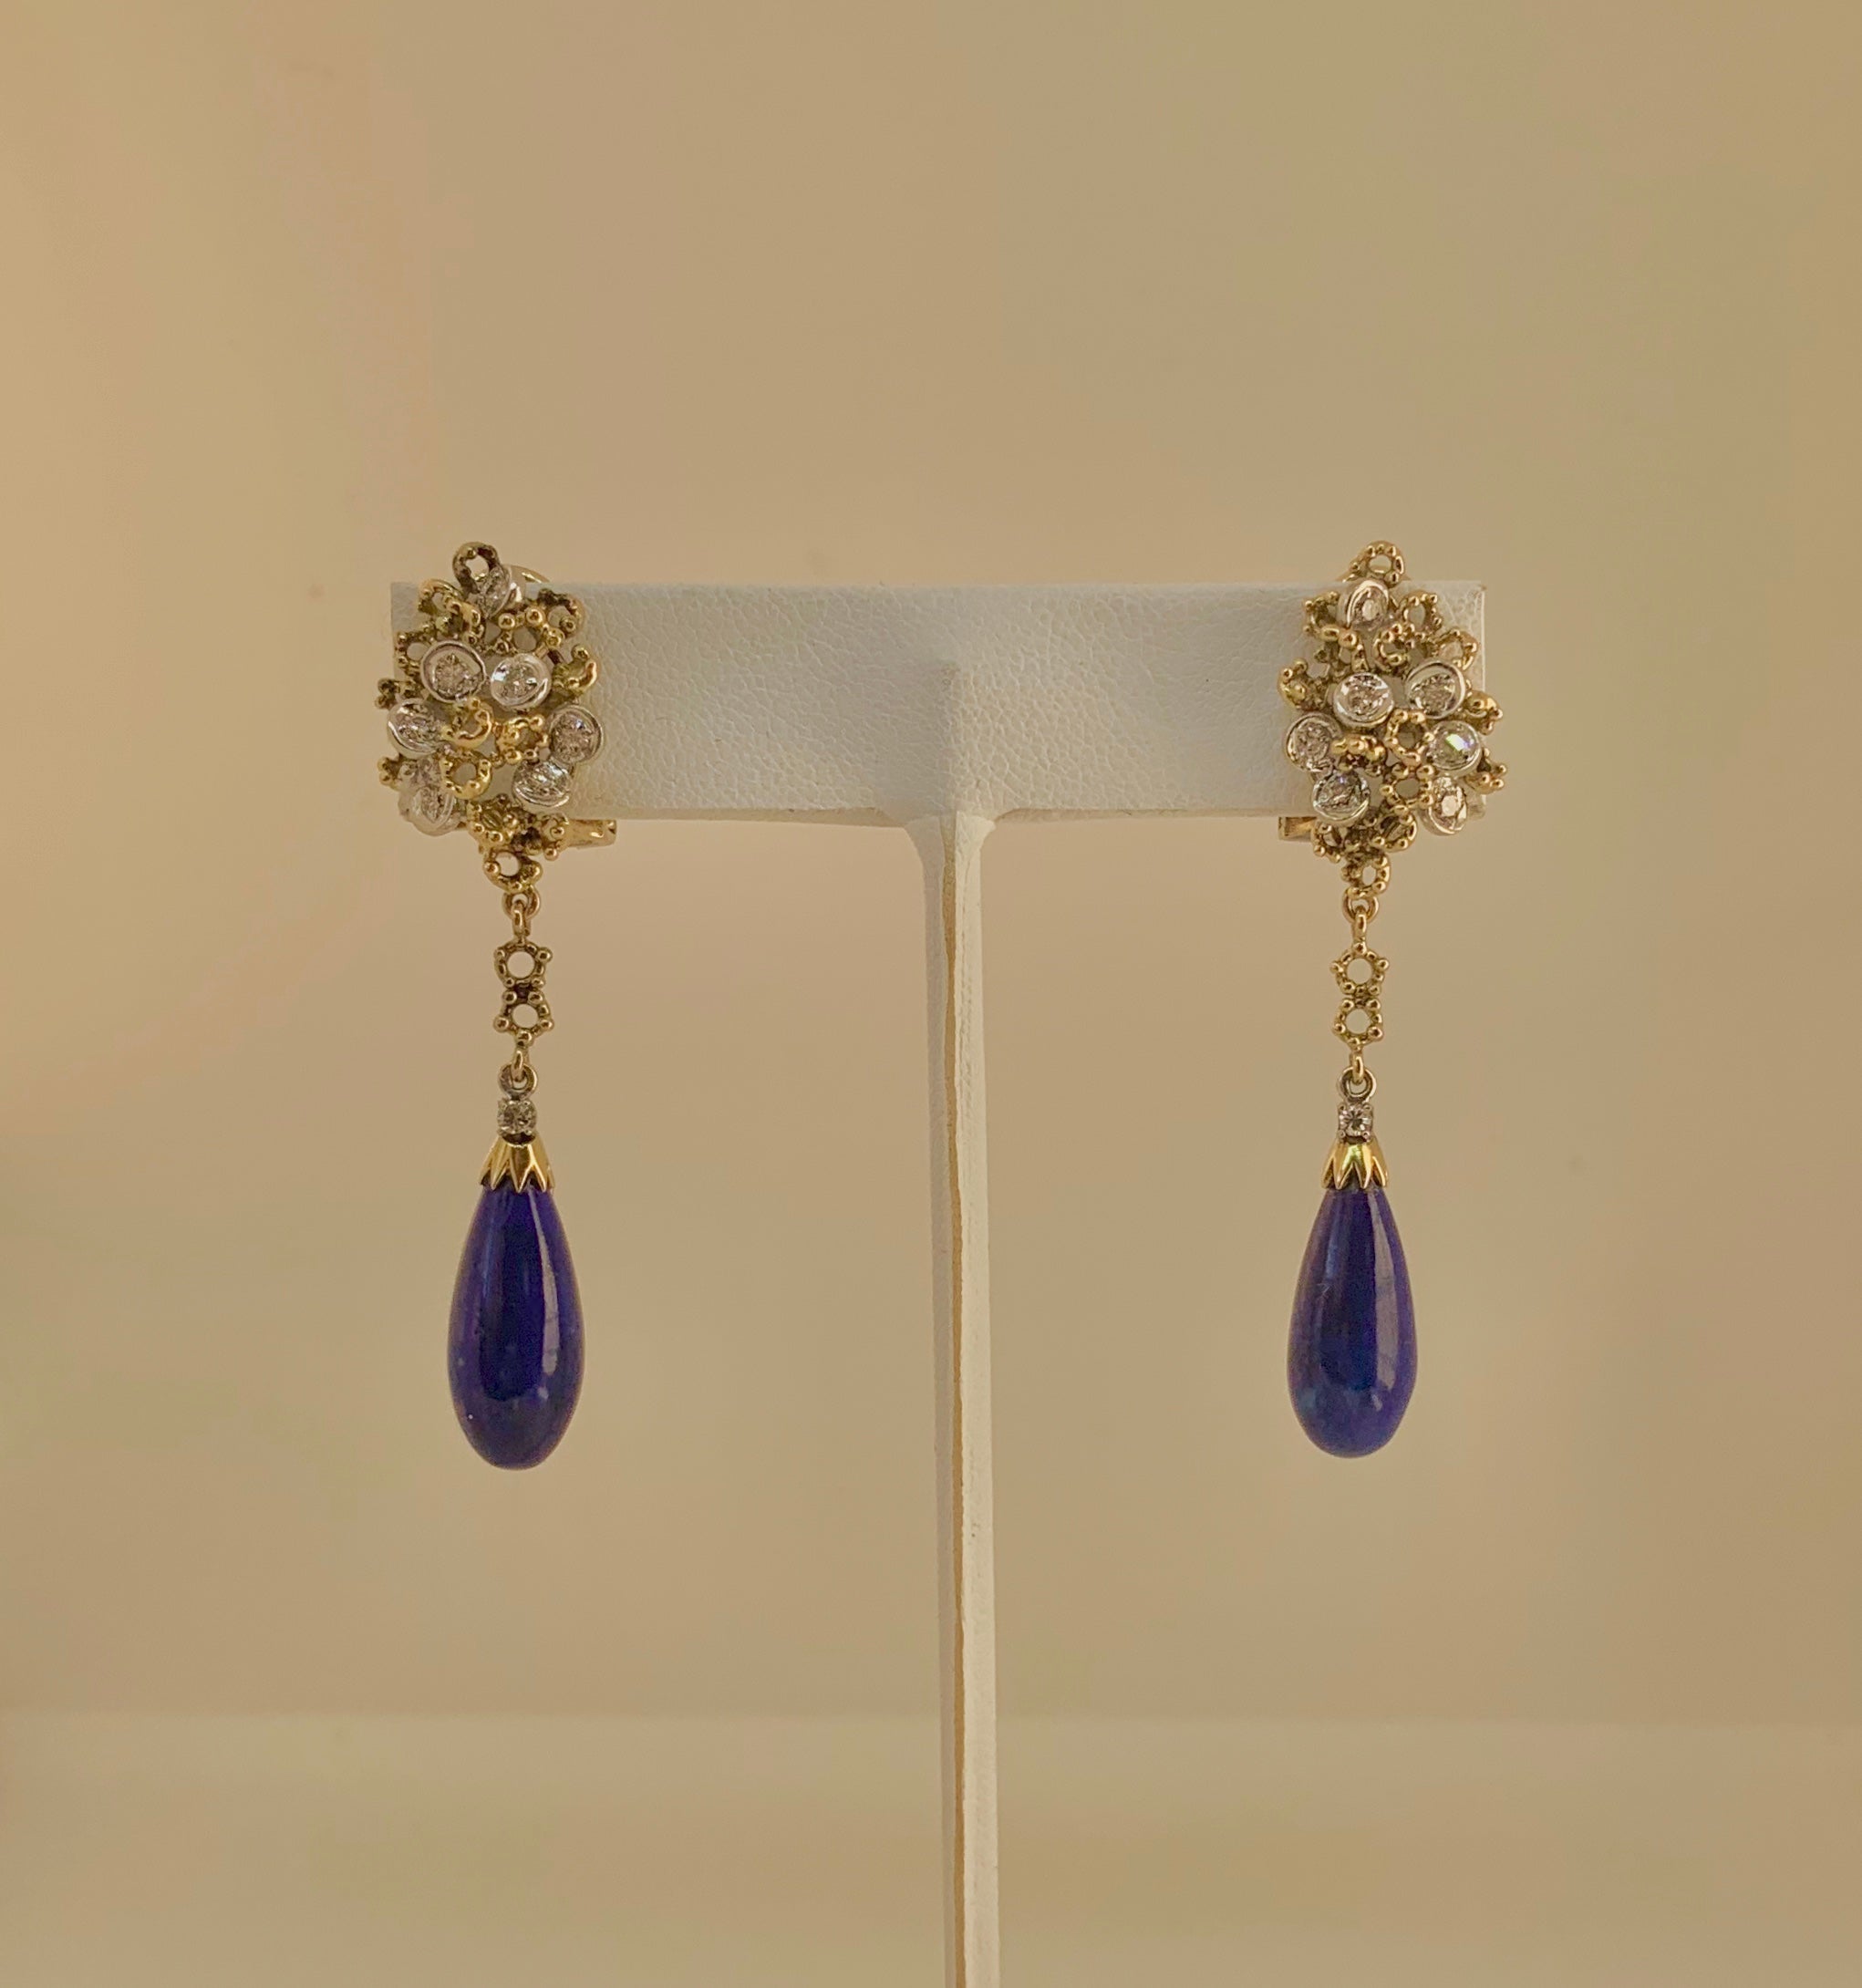 Il s'agit d'une superbe paire de boucles d'oreilles pendantes en lapis-lazuli et diamant, de style moderne du milieu du siècle, en or blanc et jaune 18 carats.  Les boucles d'oreilles comportent de magnifiques pendentifs en lapis-lazuli.  Les